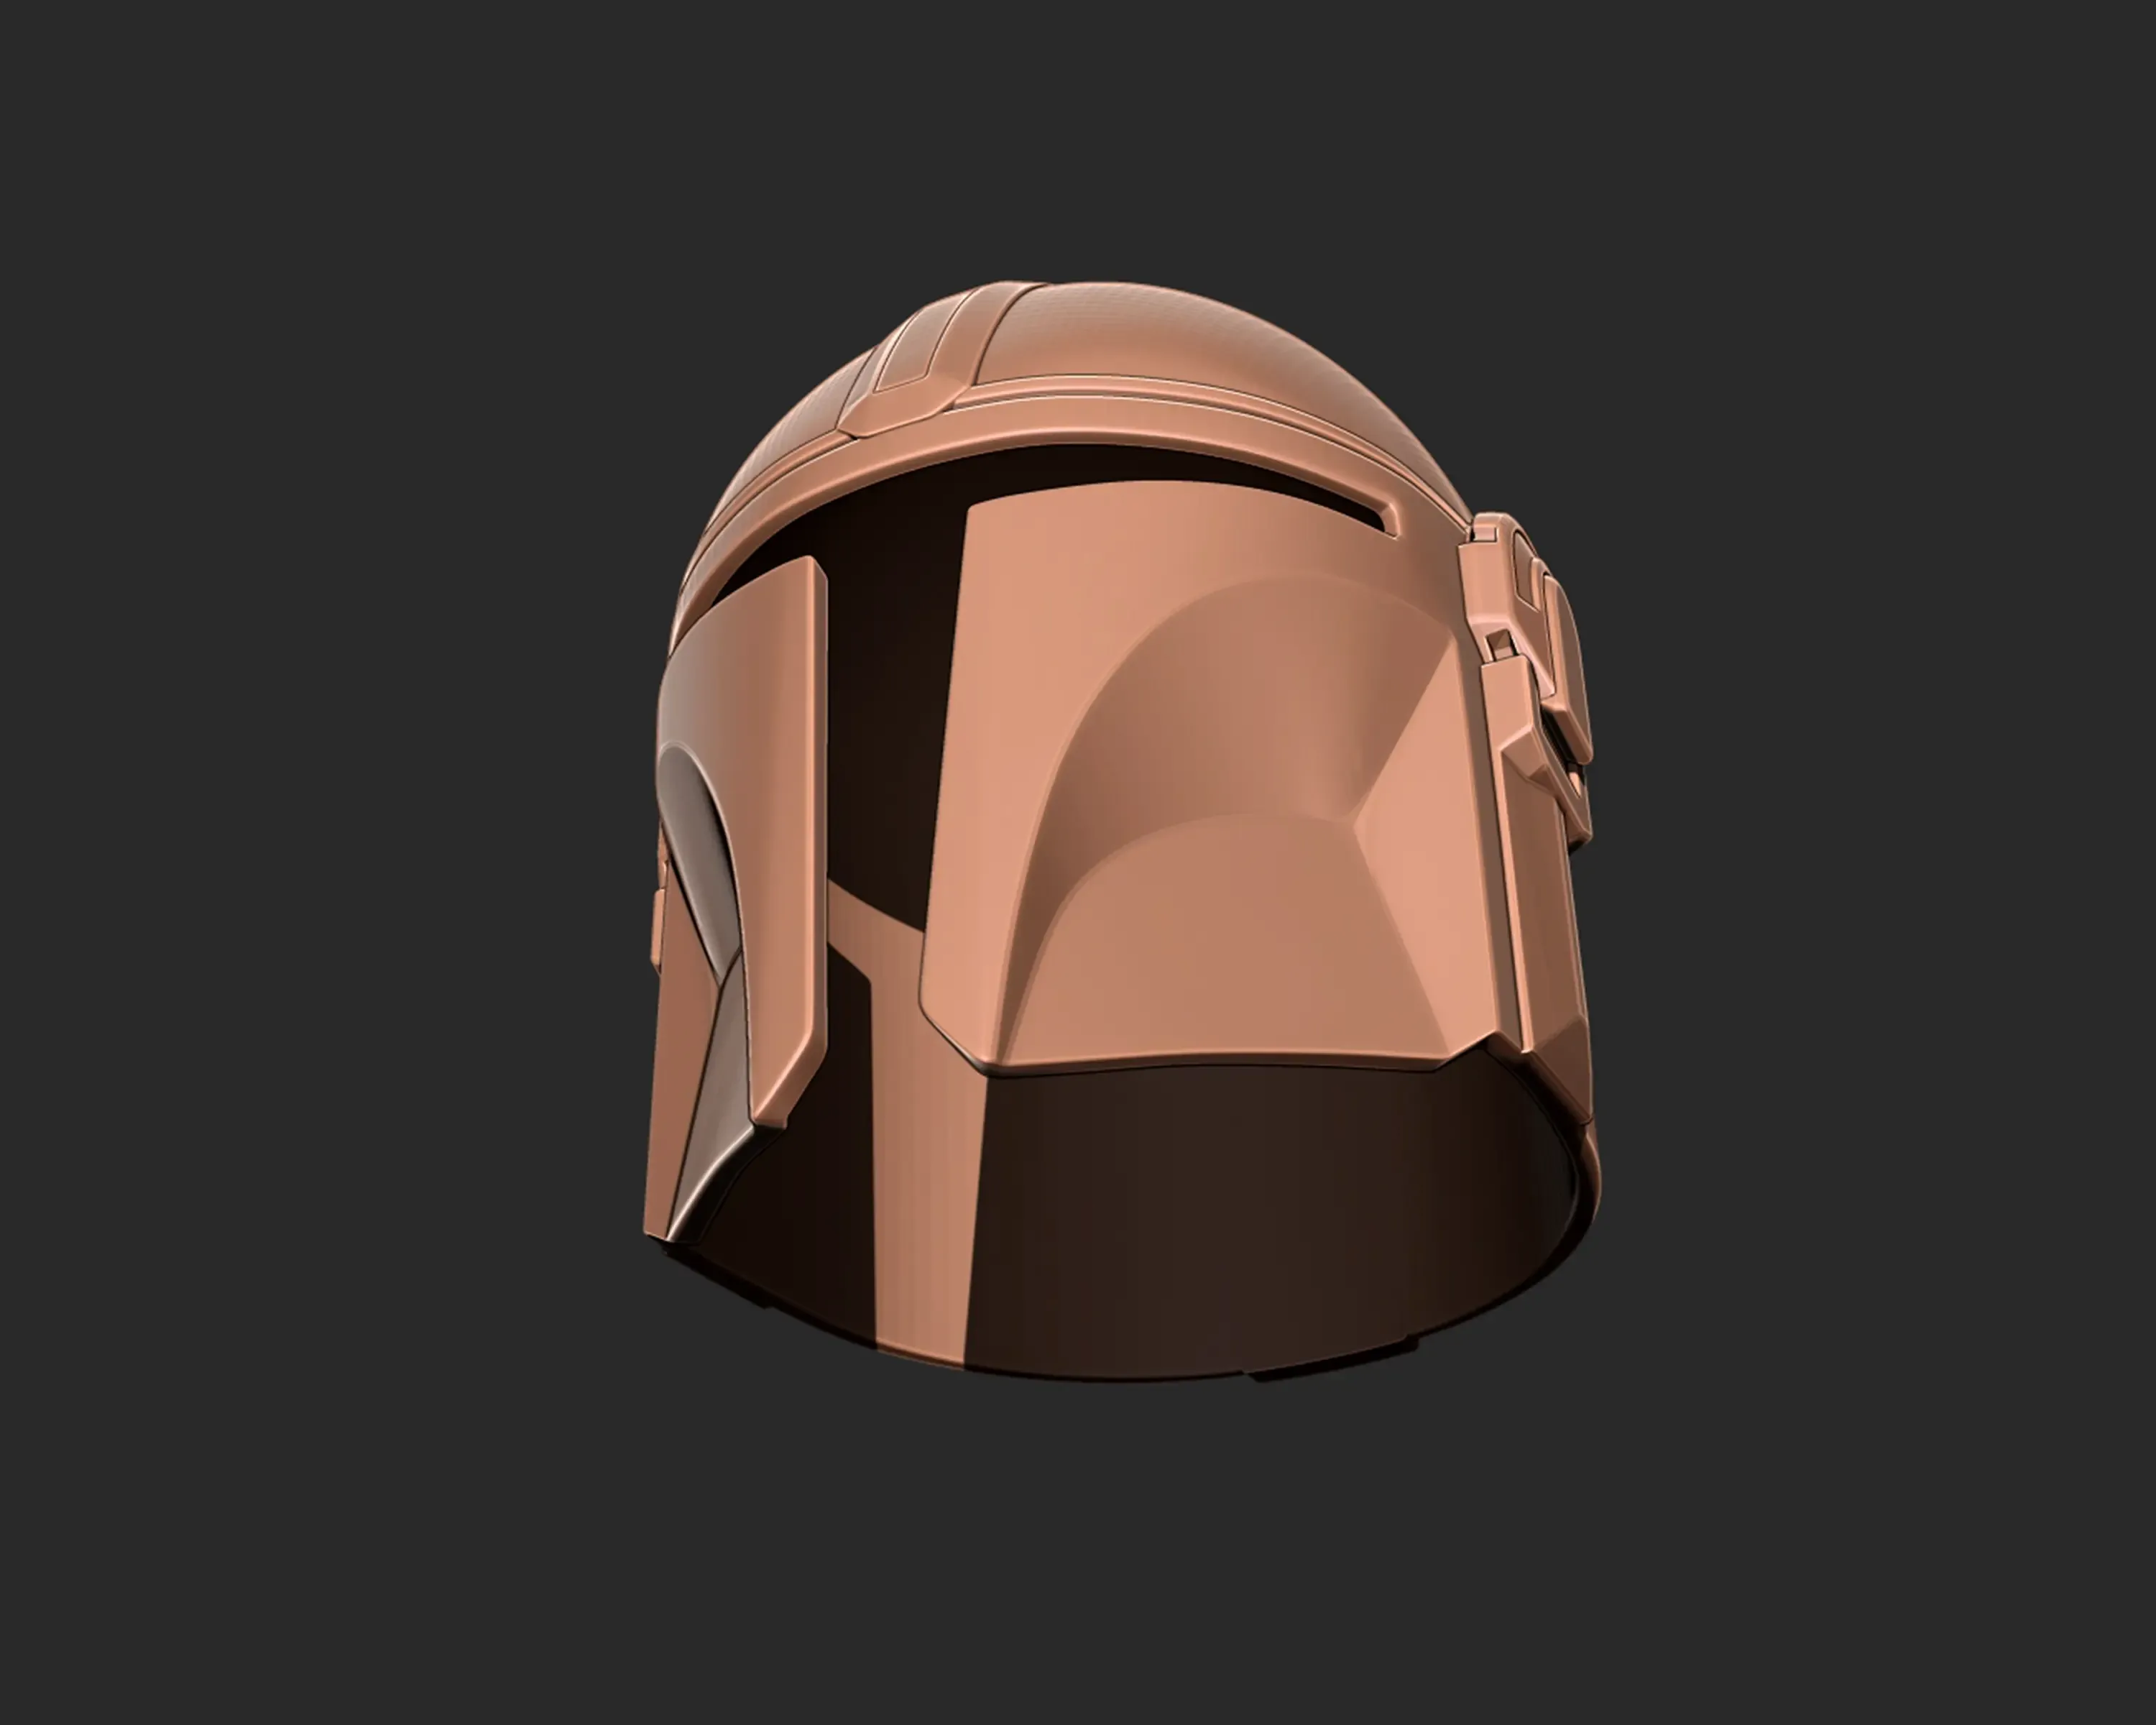 Mandalorian Helmet 3d print model